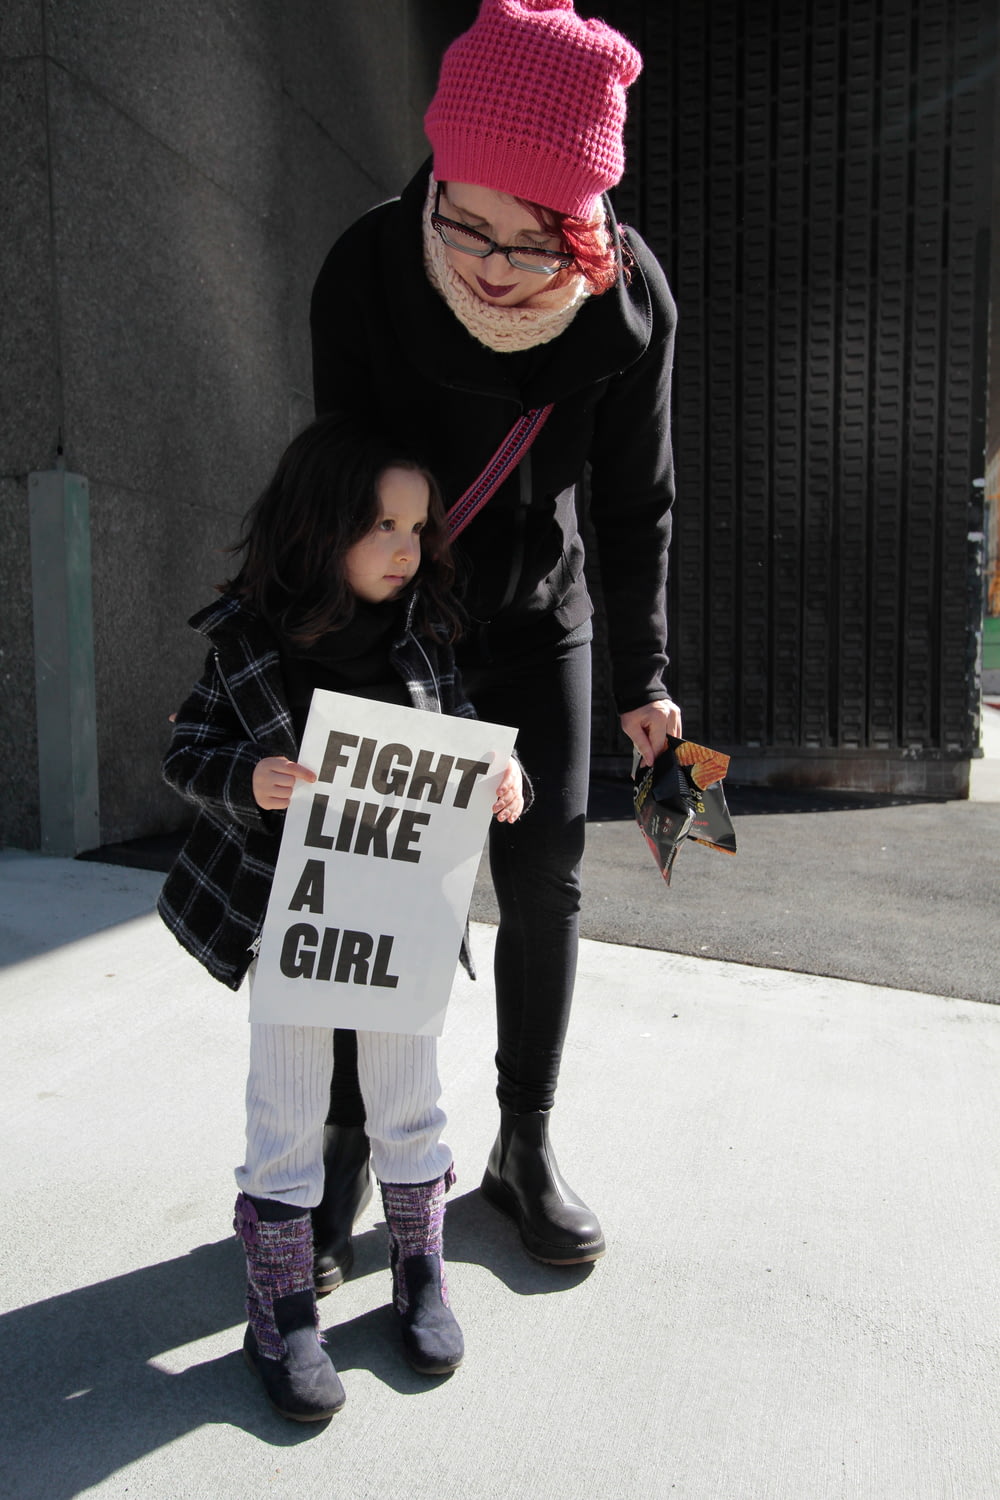 Muchacha sosteniendo la pelea como una muchacha de papel impreso al lado de la mujer sosteniendo el paquete de plástico